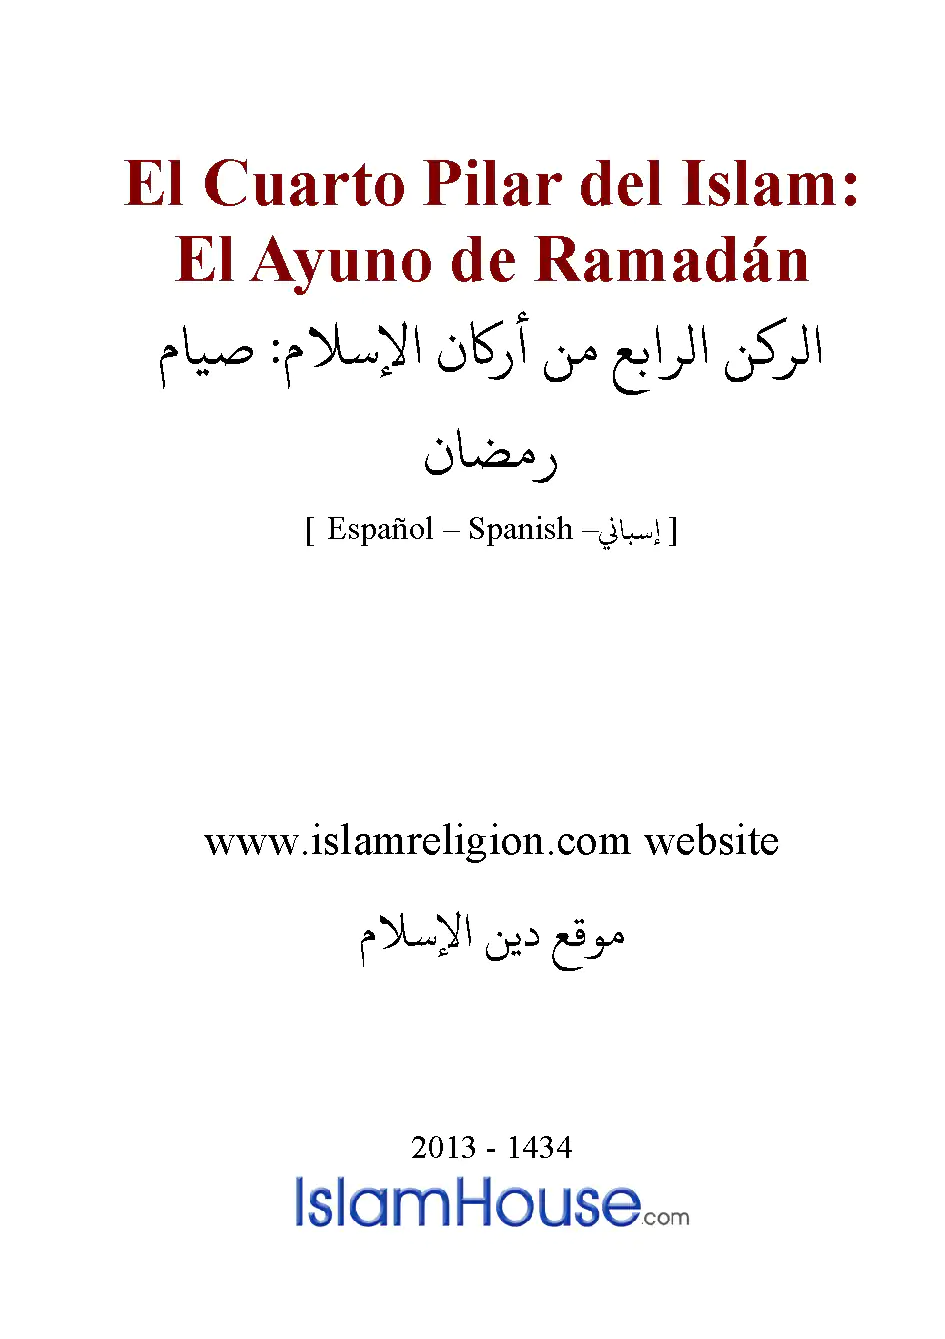 El Cuarto Pilar del Islam: El Ayuno de Ramadán